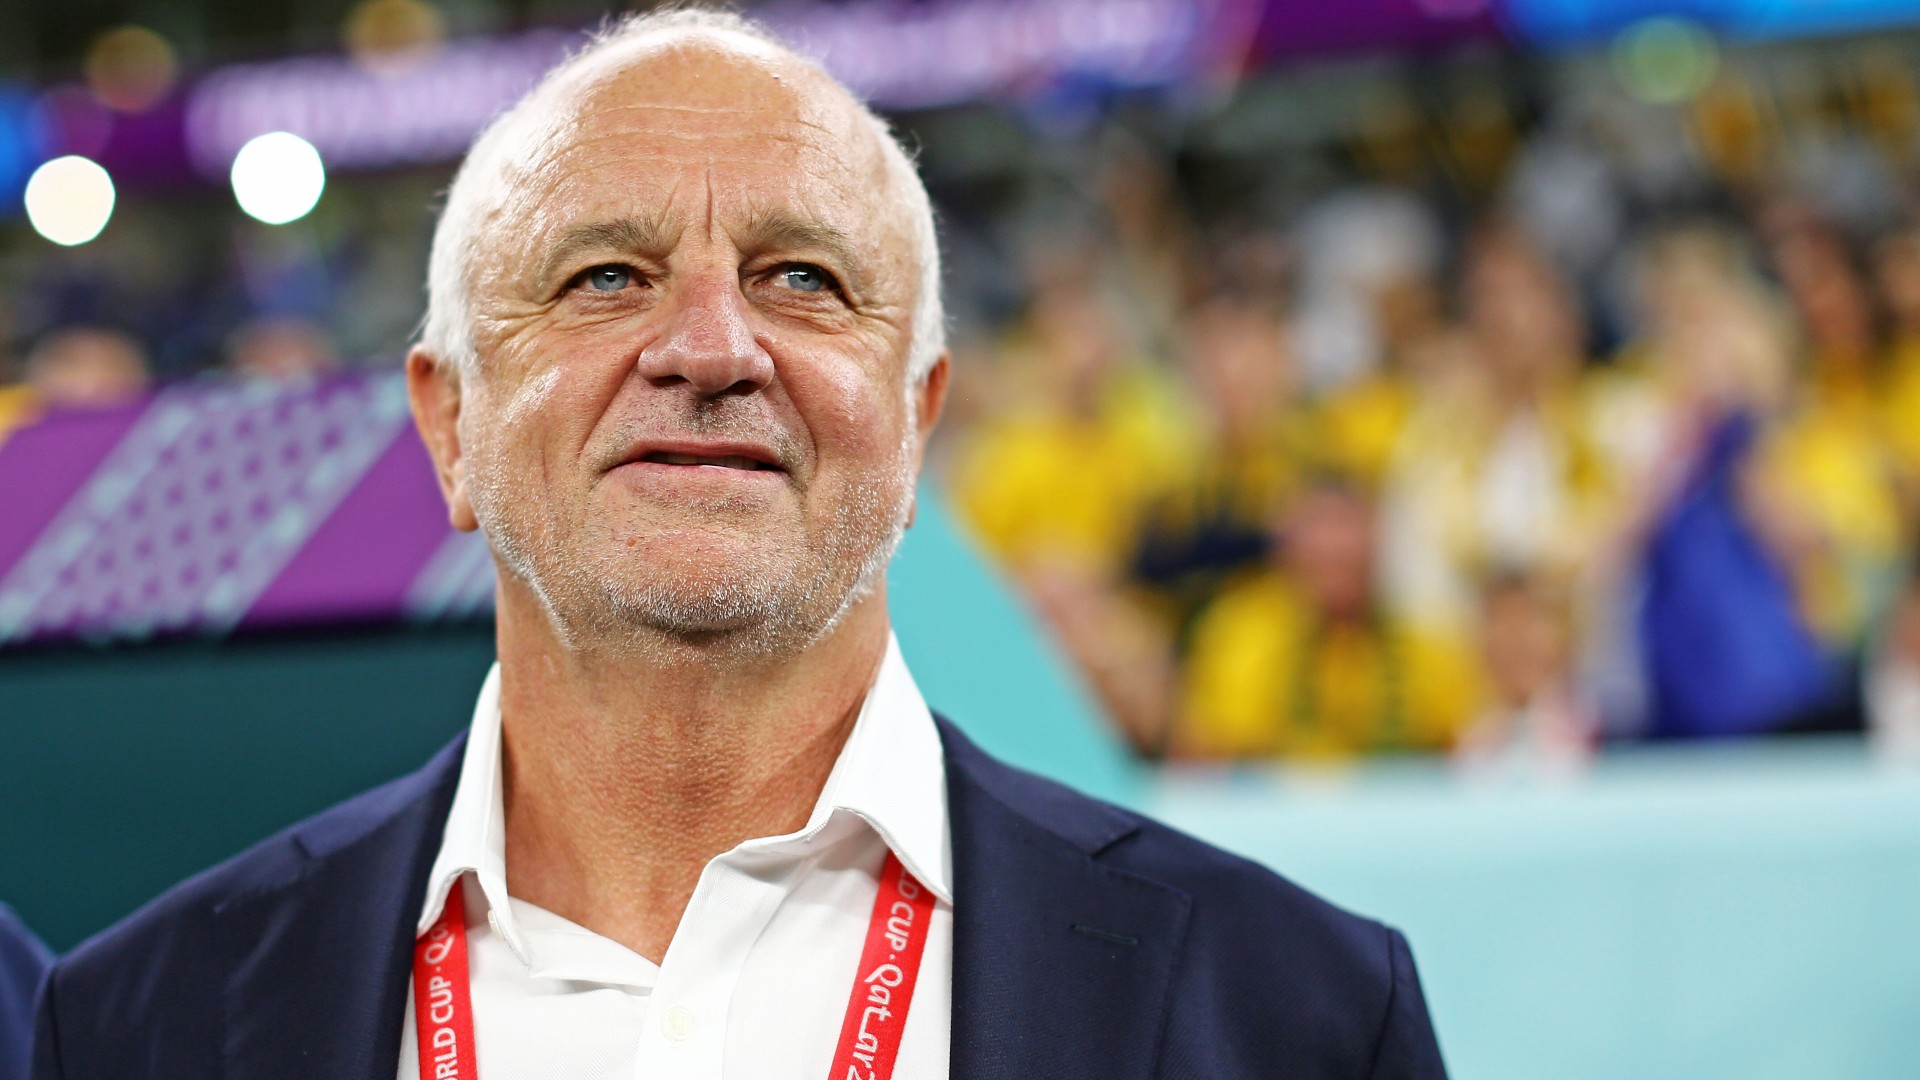 L'entraîneur des Socceroos, Graham Arnold, confirme la santé d'Ajdin Hrustic avant le match contre la Tunisie